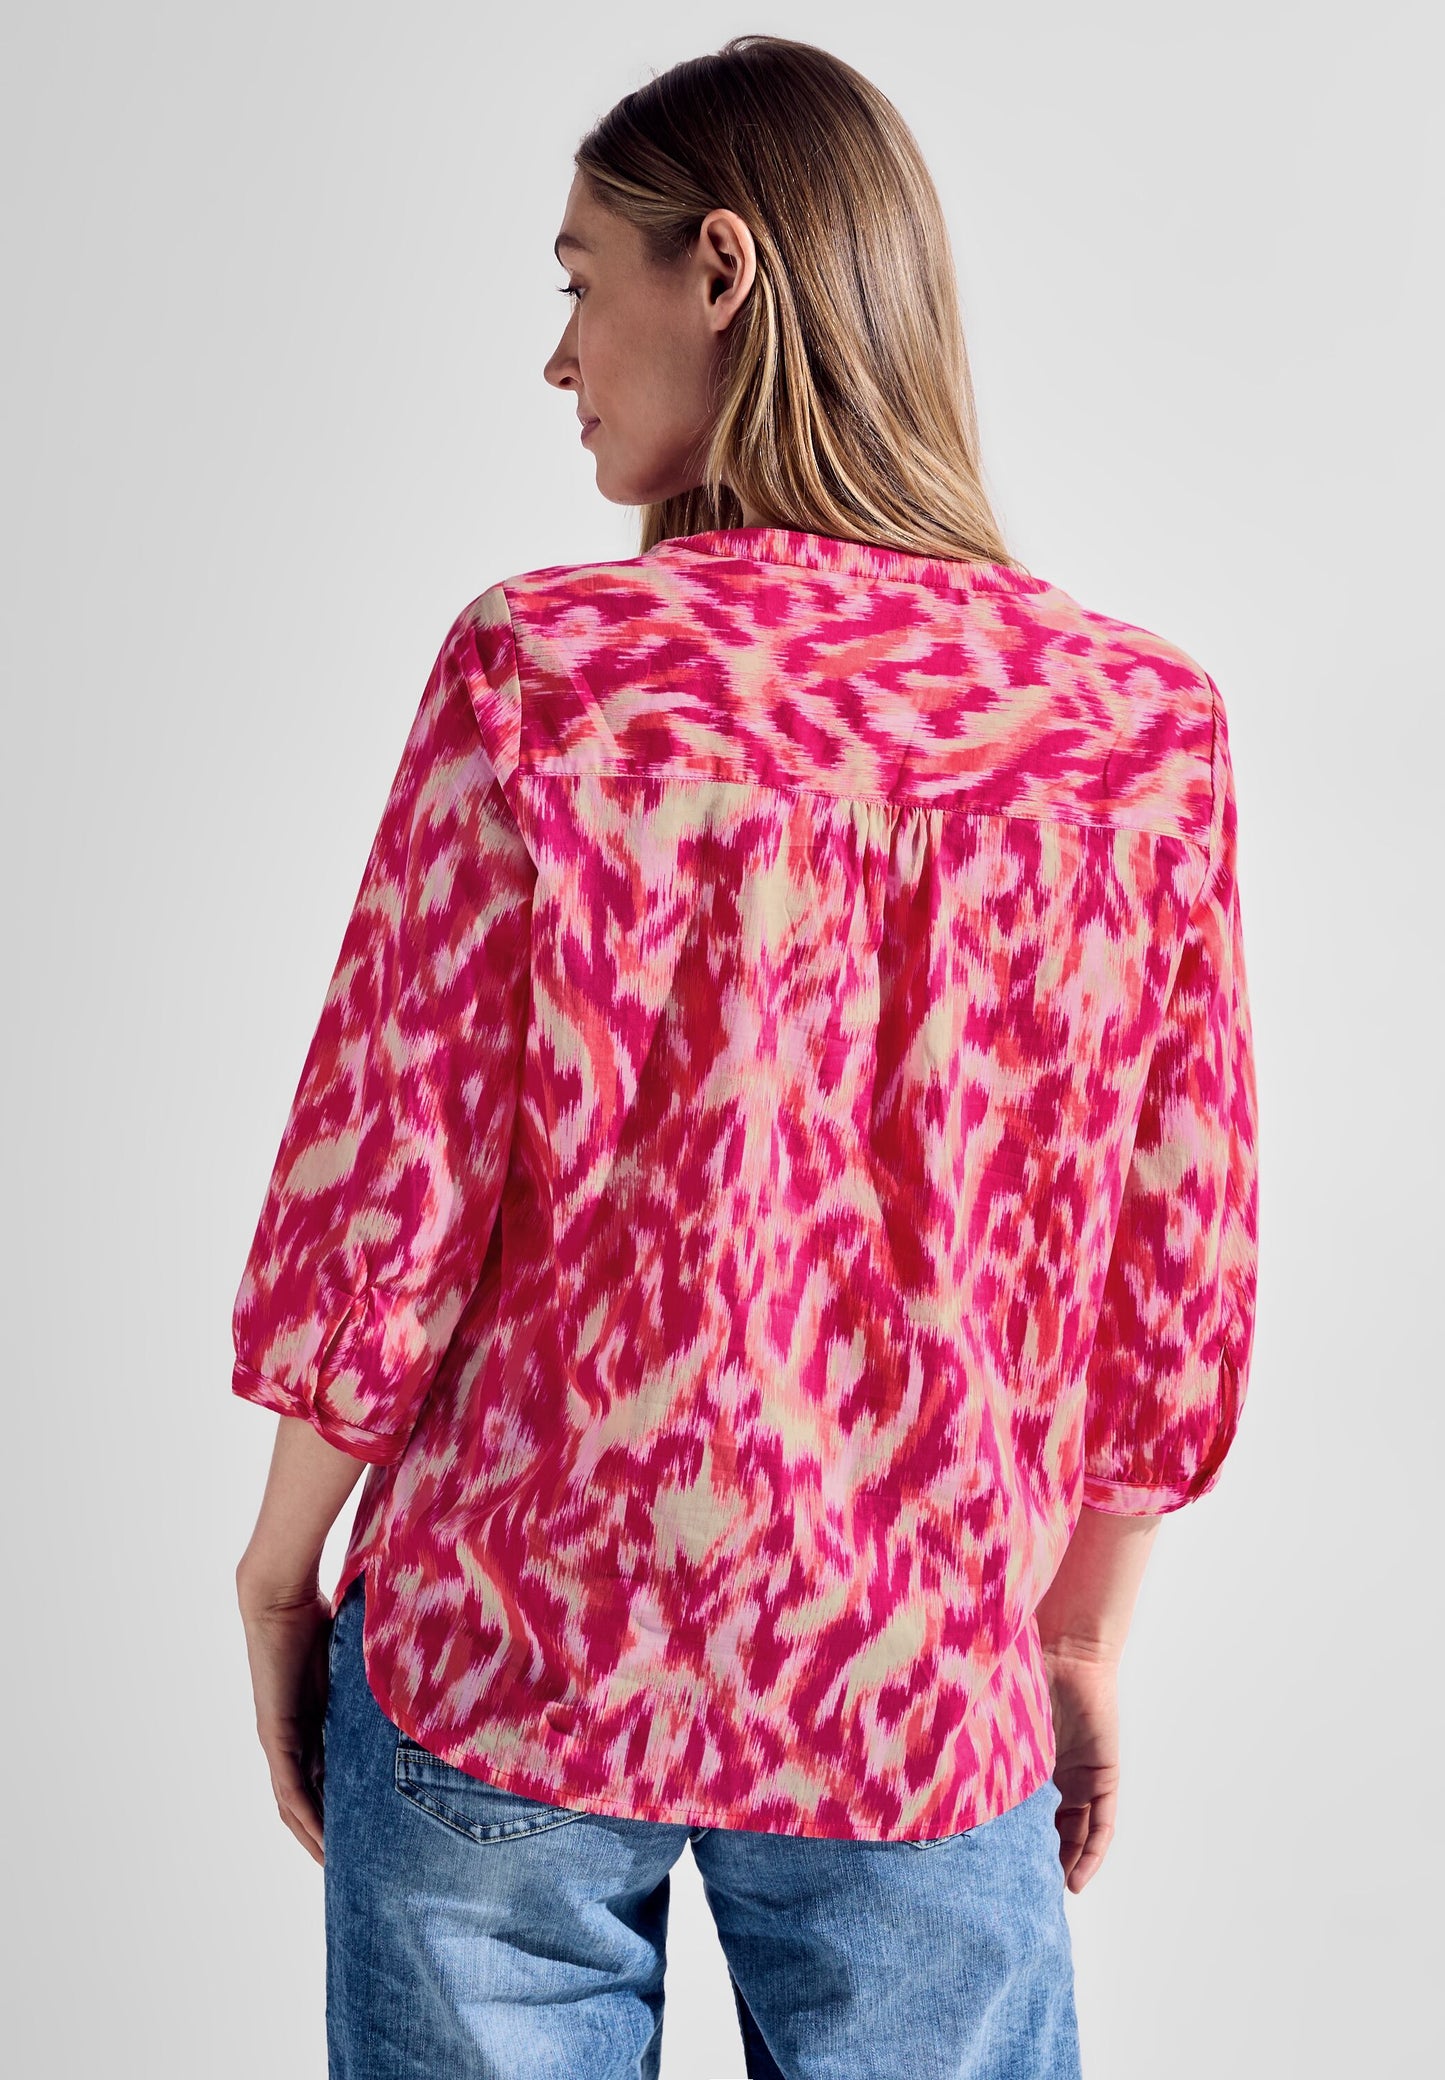 CECIL - Bluse mit modernem Print - pink sorbet